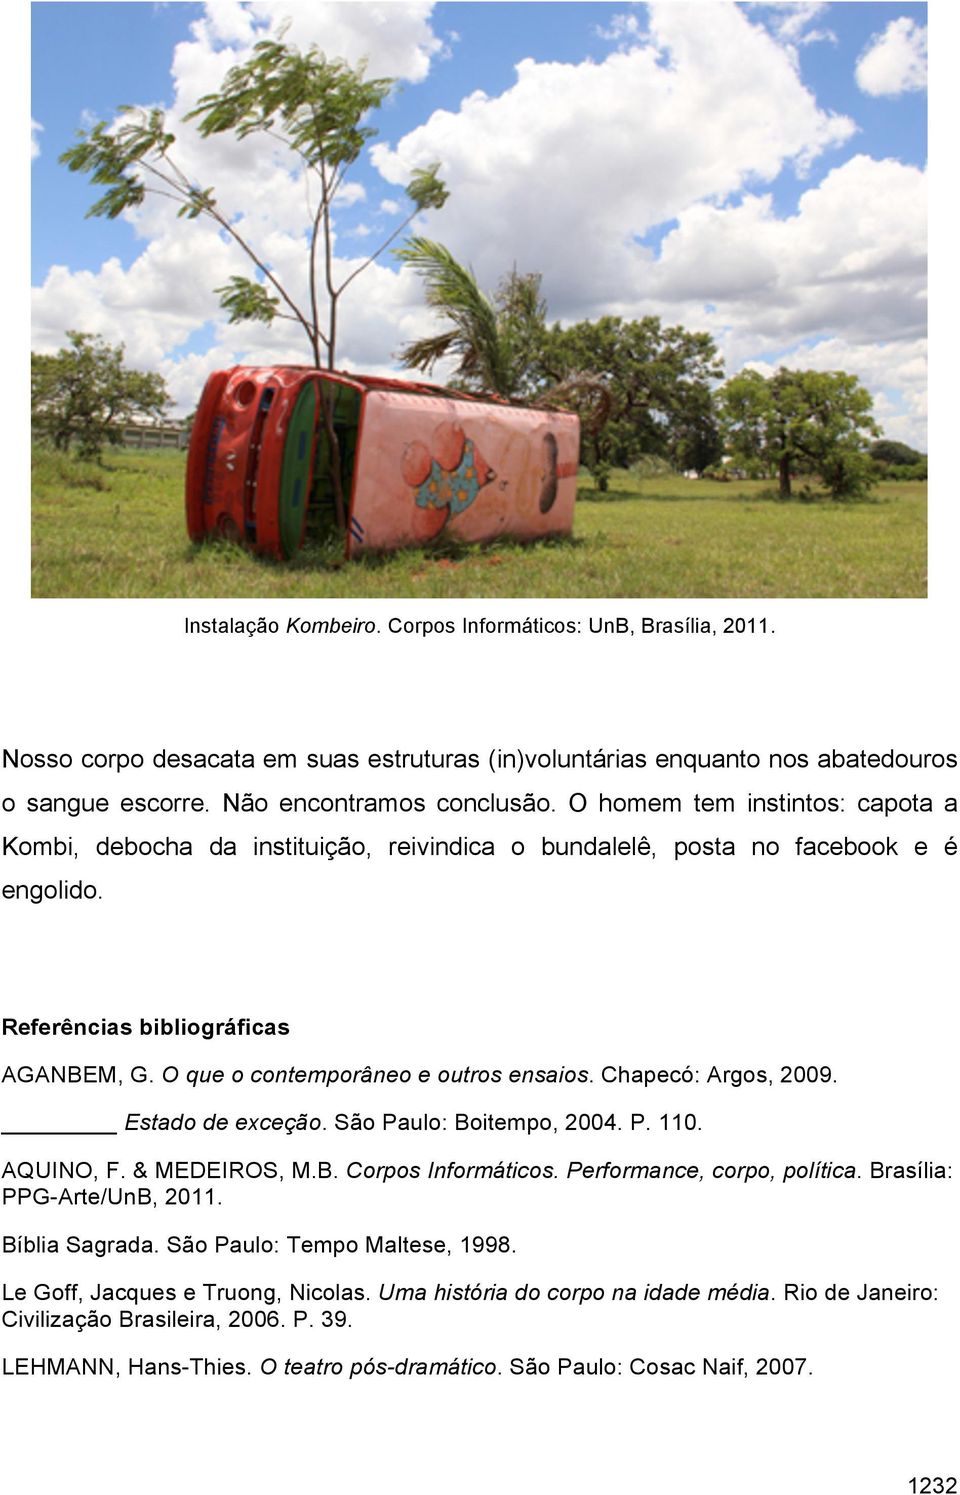 Chapecó: Argos, 2009. Estado de exceção. São Paulo: Boitempo, 2004. P. 110. AQUINO, F. & MEDEIROS, M.B. Corpos Informáticos. Performance, corpo, política. Brasília: PPG-Arte/UnB, 2011. Bíblia Sagrada.